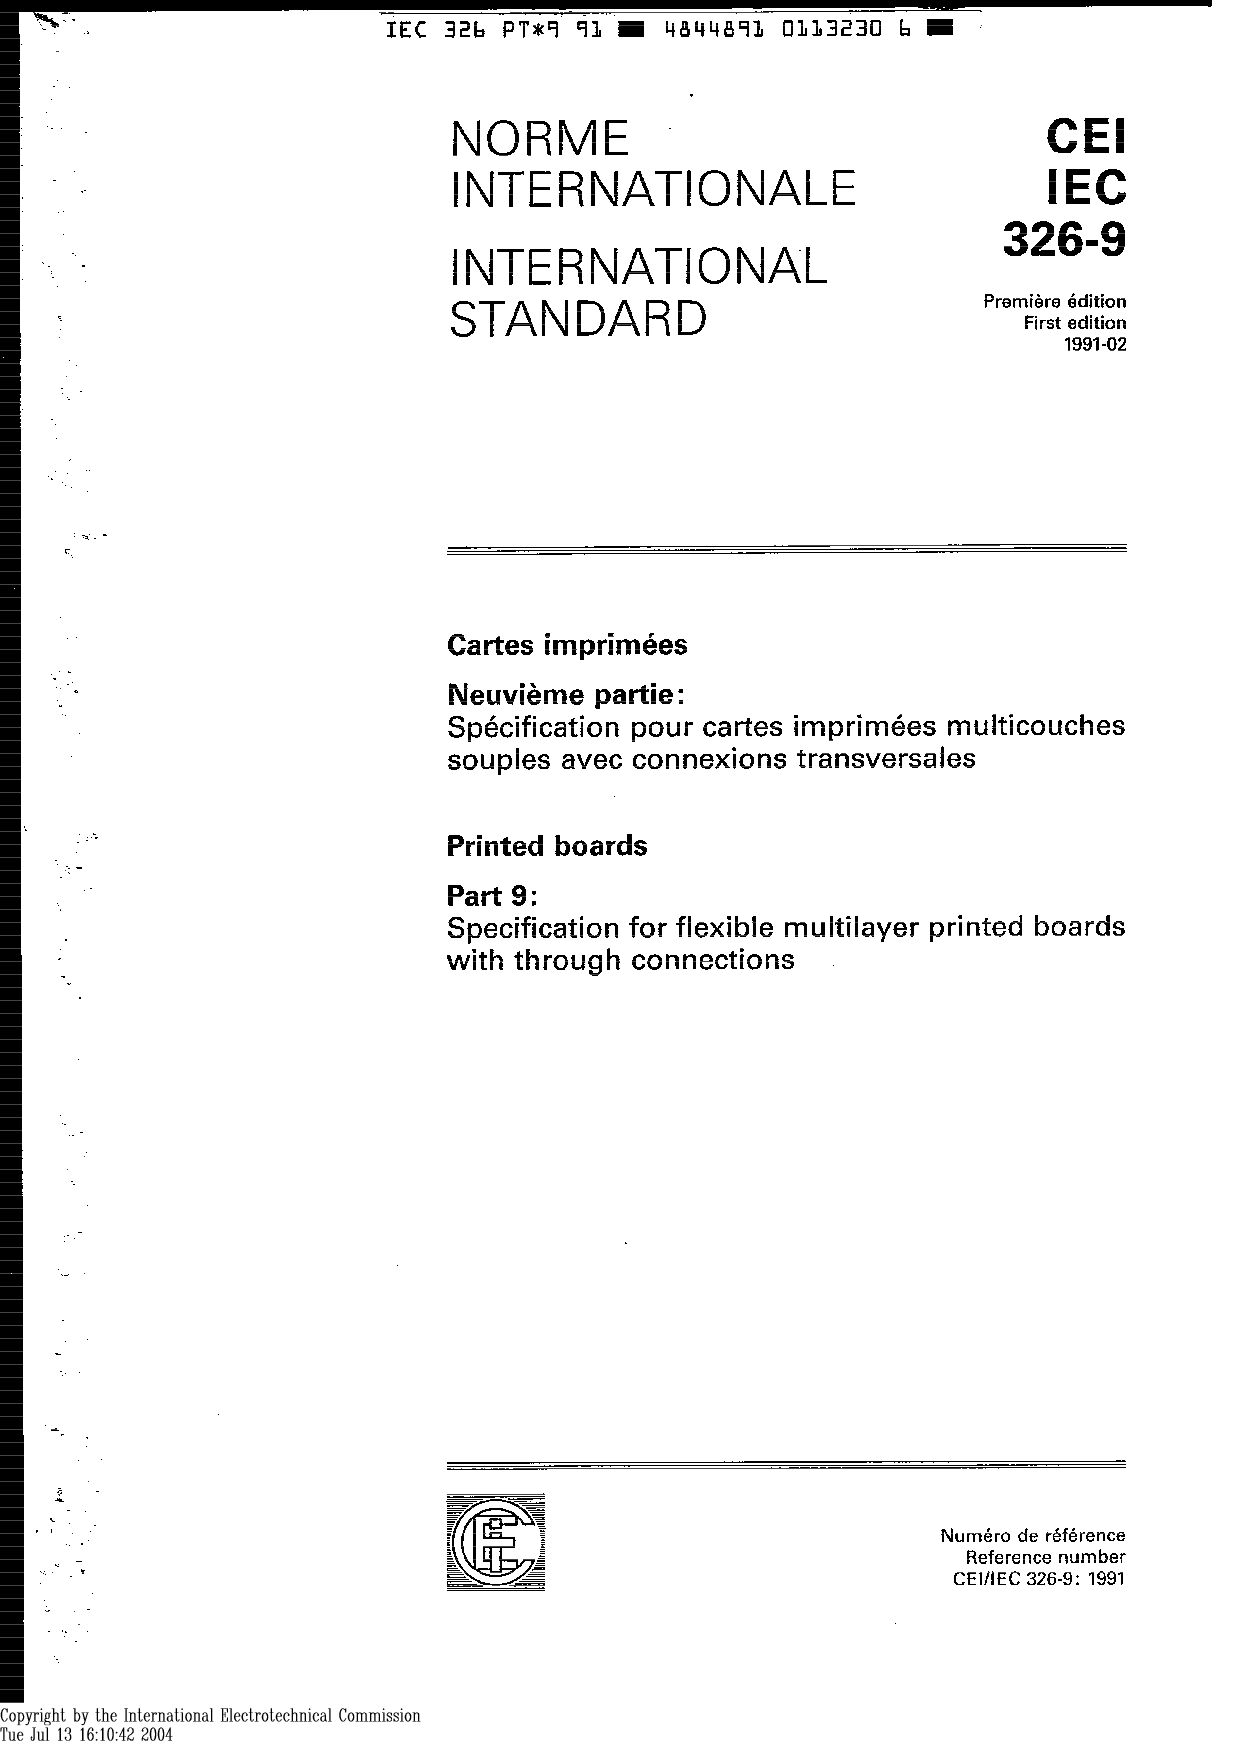 IEC 60326-9:1991